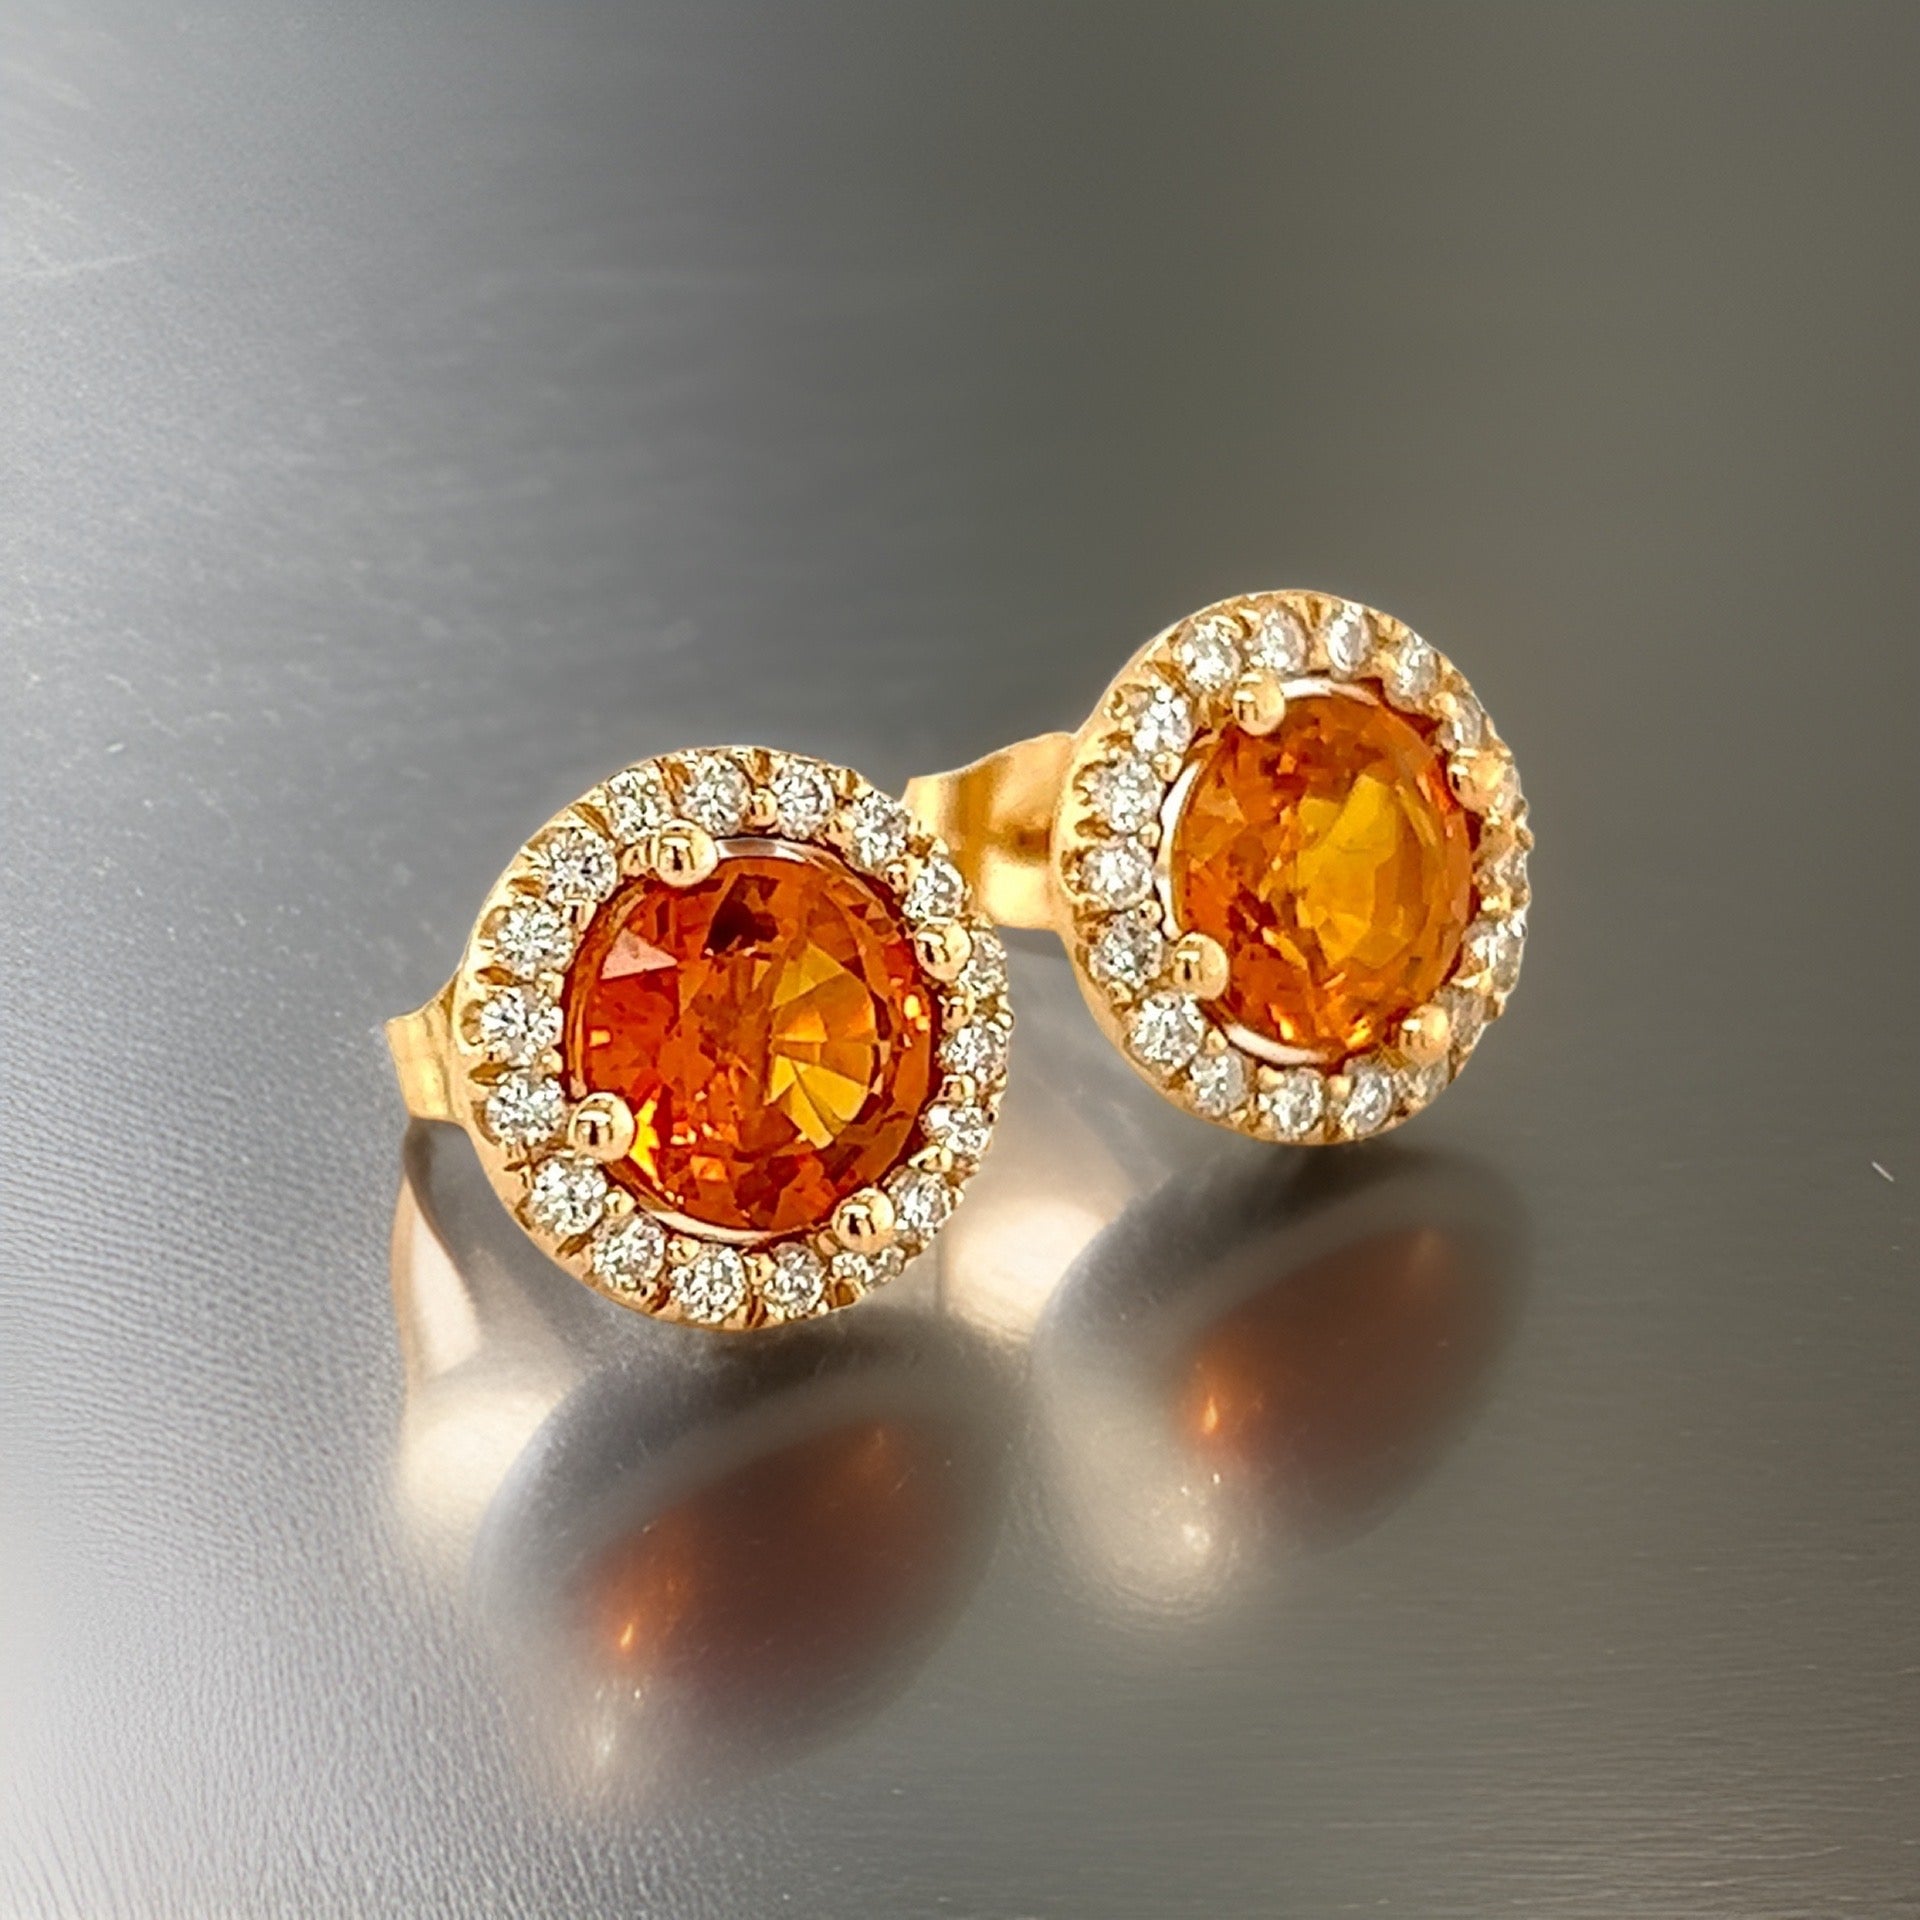 Natural Orange Sapphire Diamond Stud Earrings 14k WG 3.54 TCW Certified $5,975 216662 - Certified Fine Jewelry